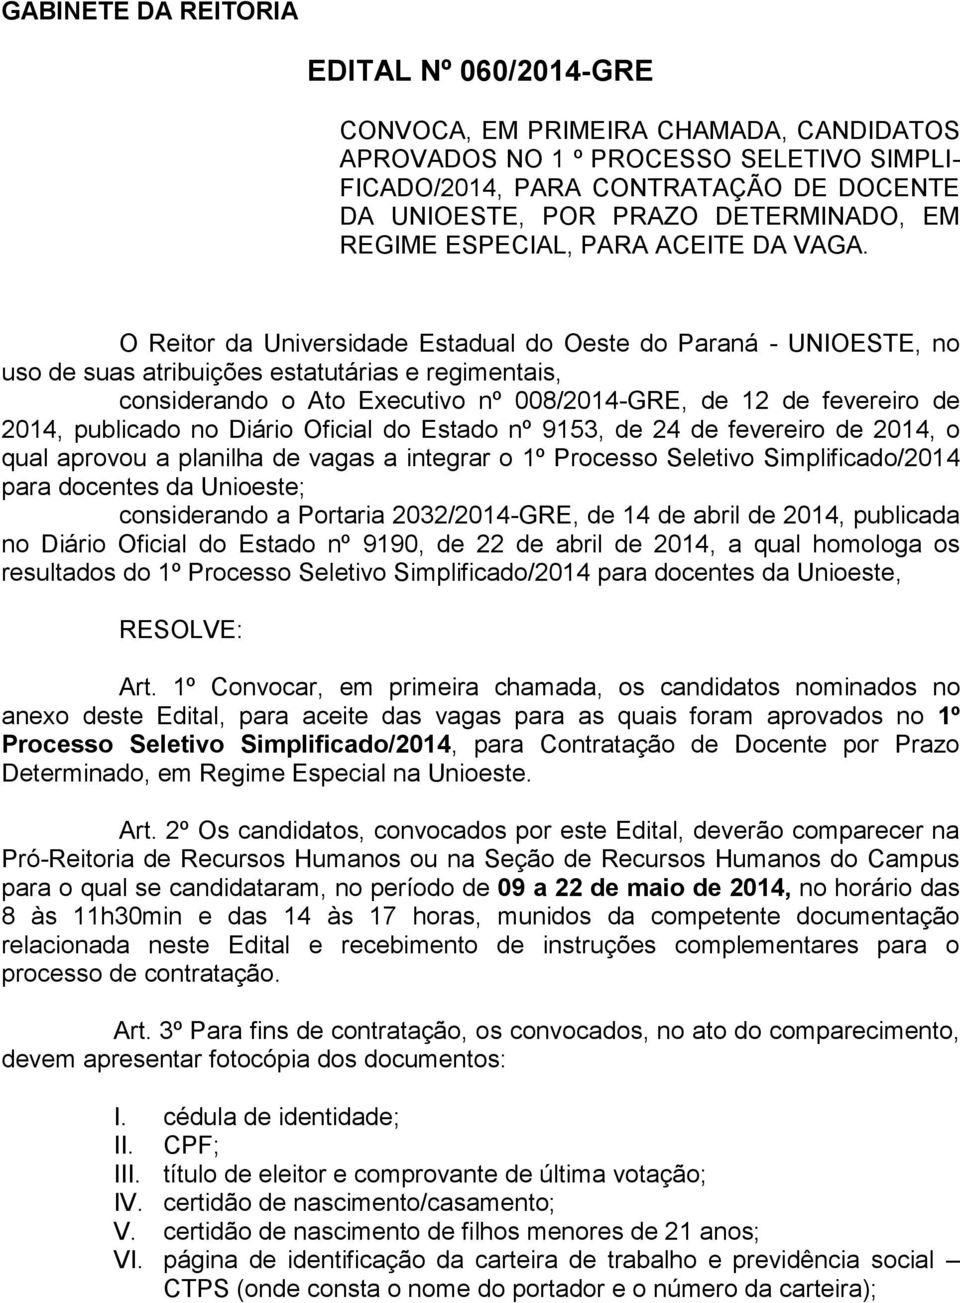 O Reitor da Universidade Estadual do Oeste do Paraná - UNIOESTE, no uso de suas atribuições estatutárias e regimentais, considerando o Ato Executivo nº 008/2014-GRE, de 12 de fevereiro de 2014,